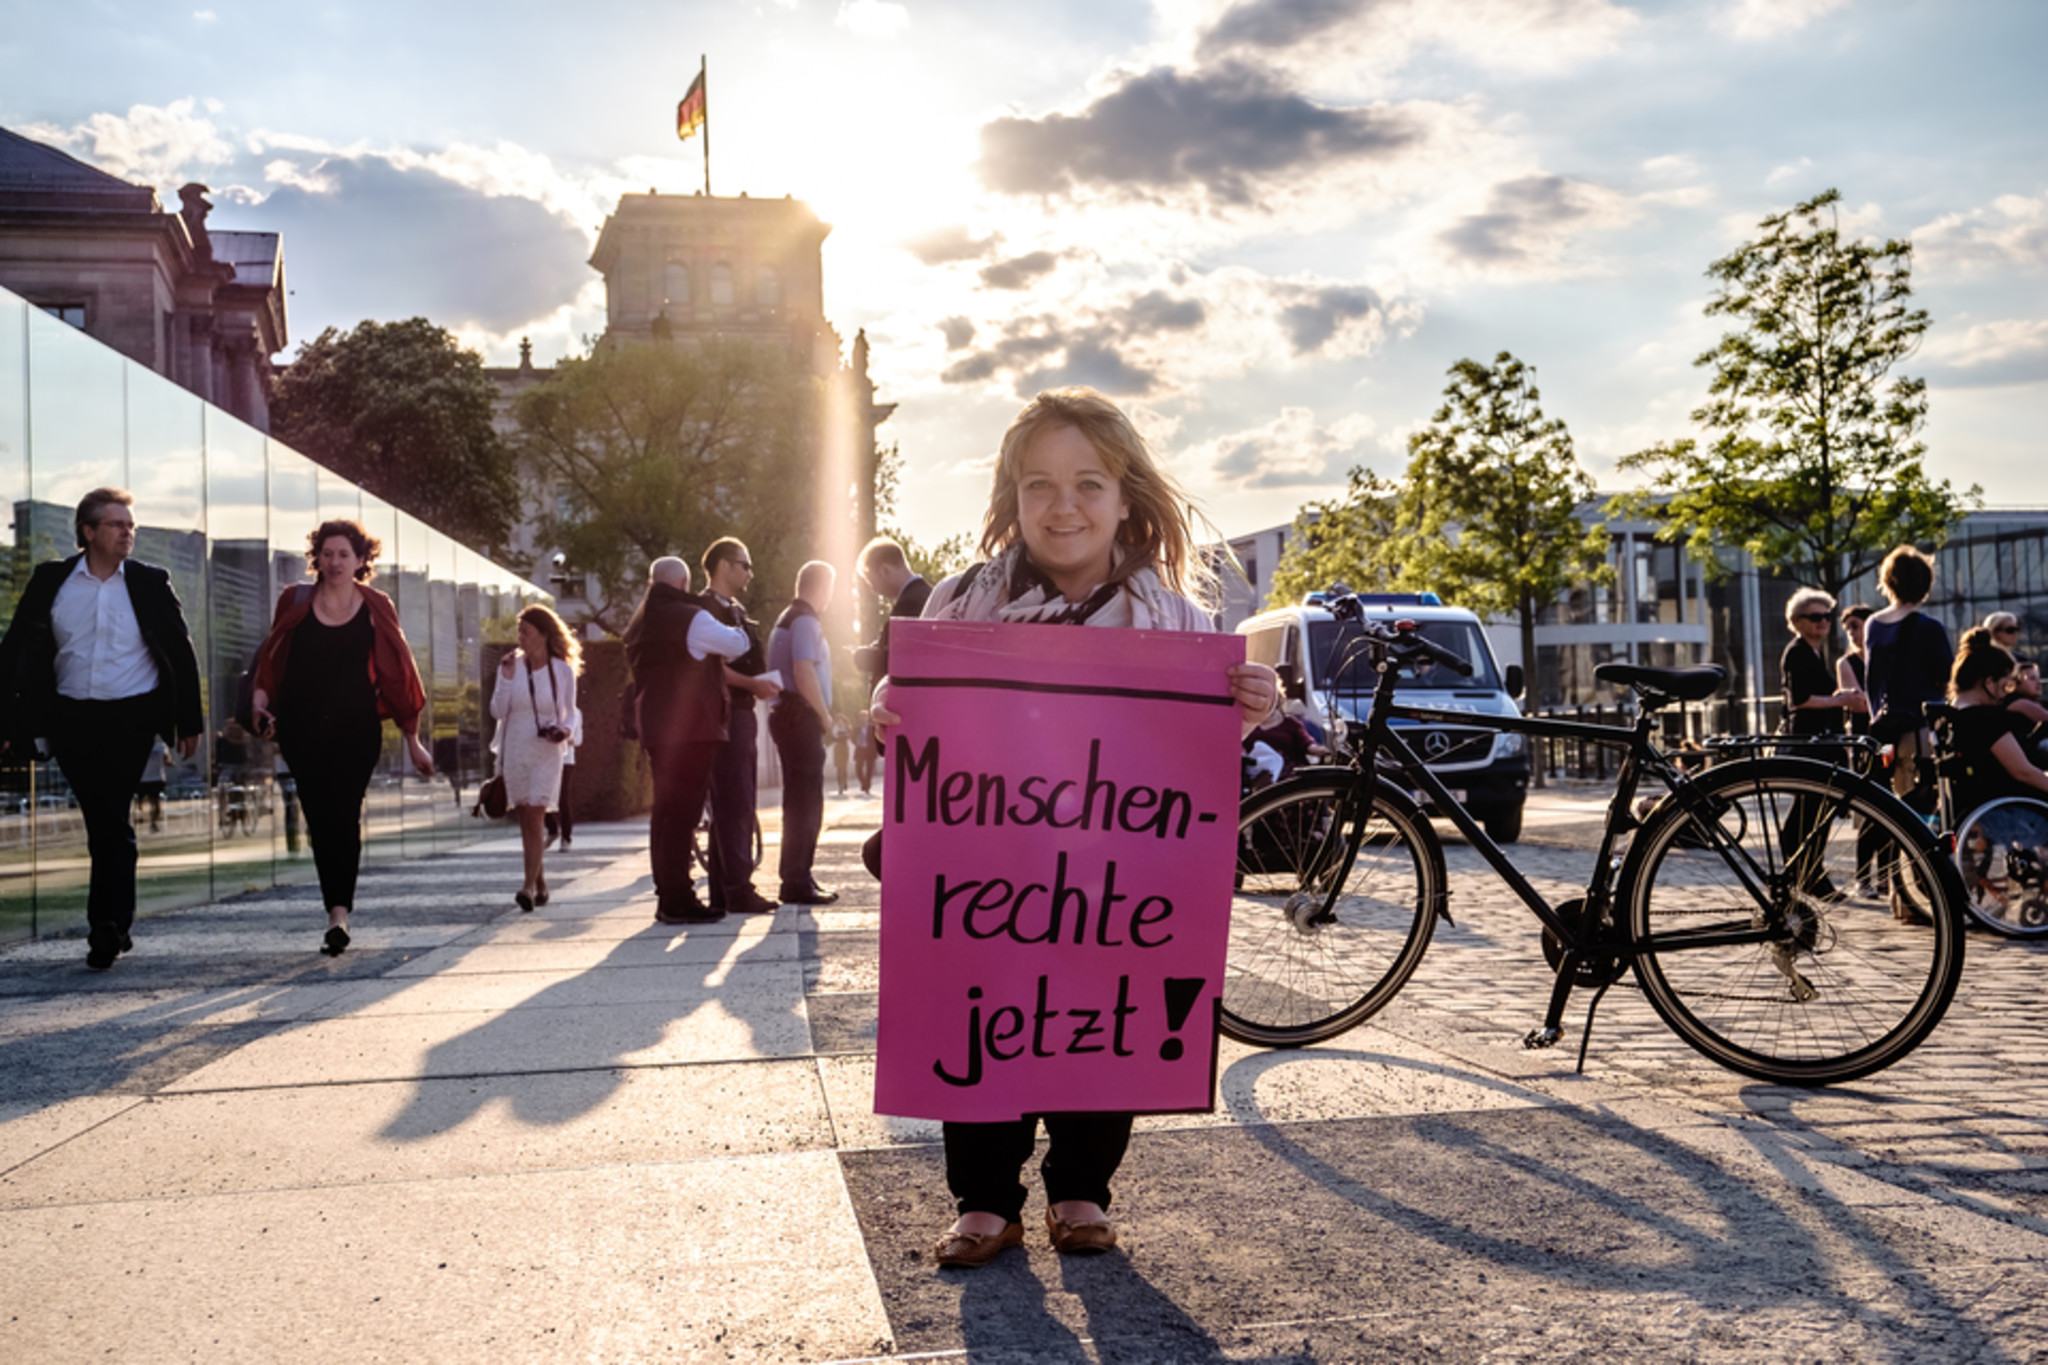 Eine kleinwüchsige Frau hält ein Plakat hoch auf dem steht: Menschenrechte jetzt!